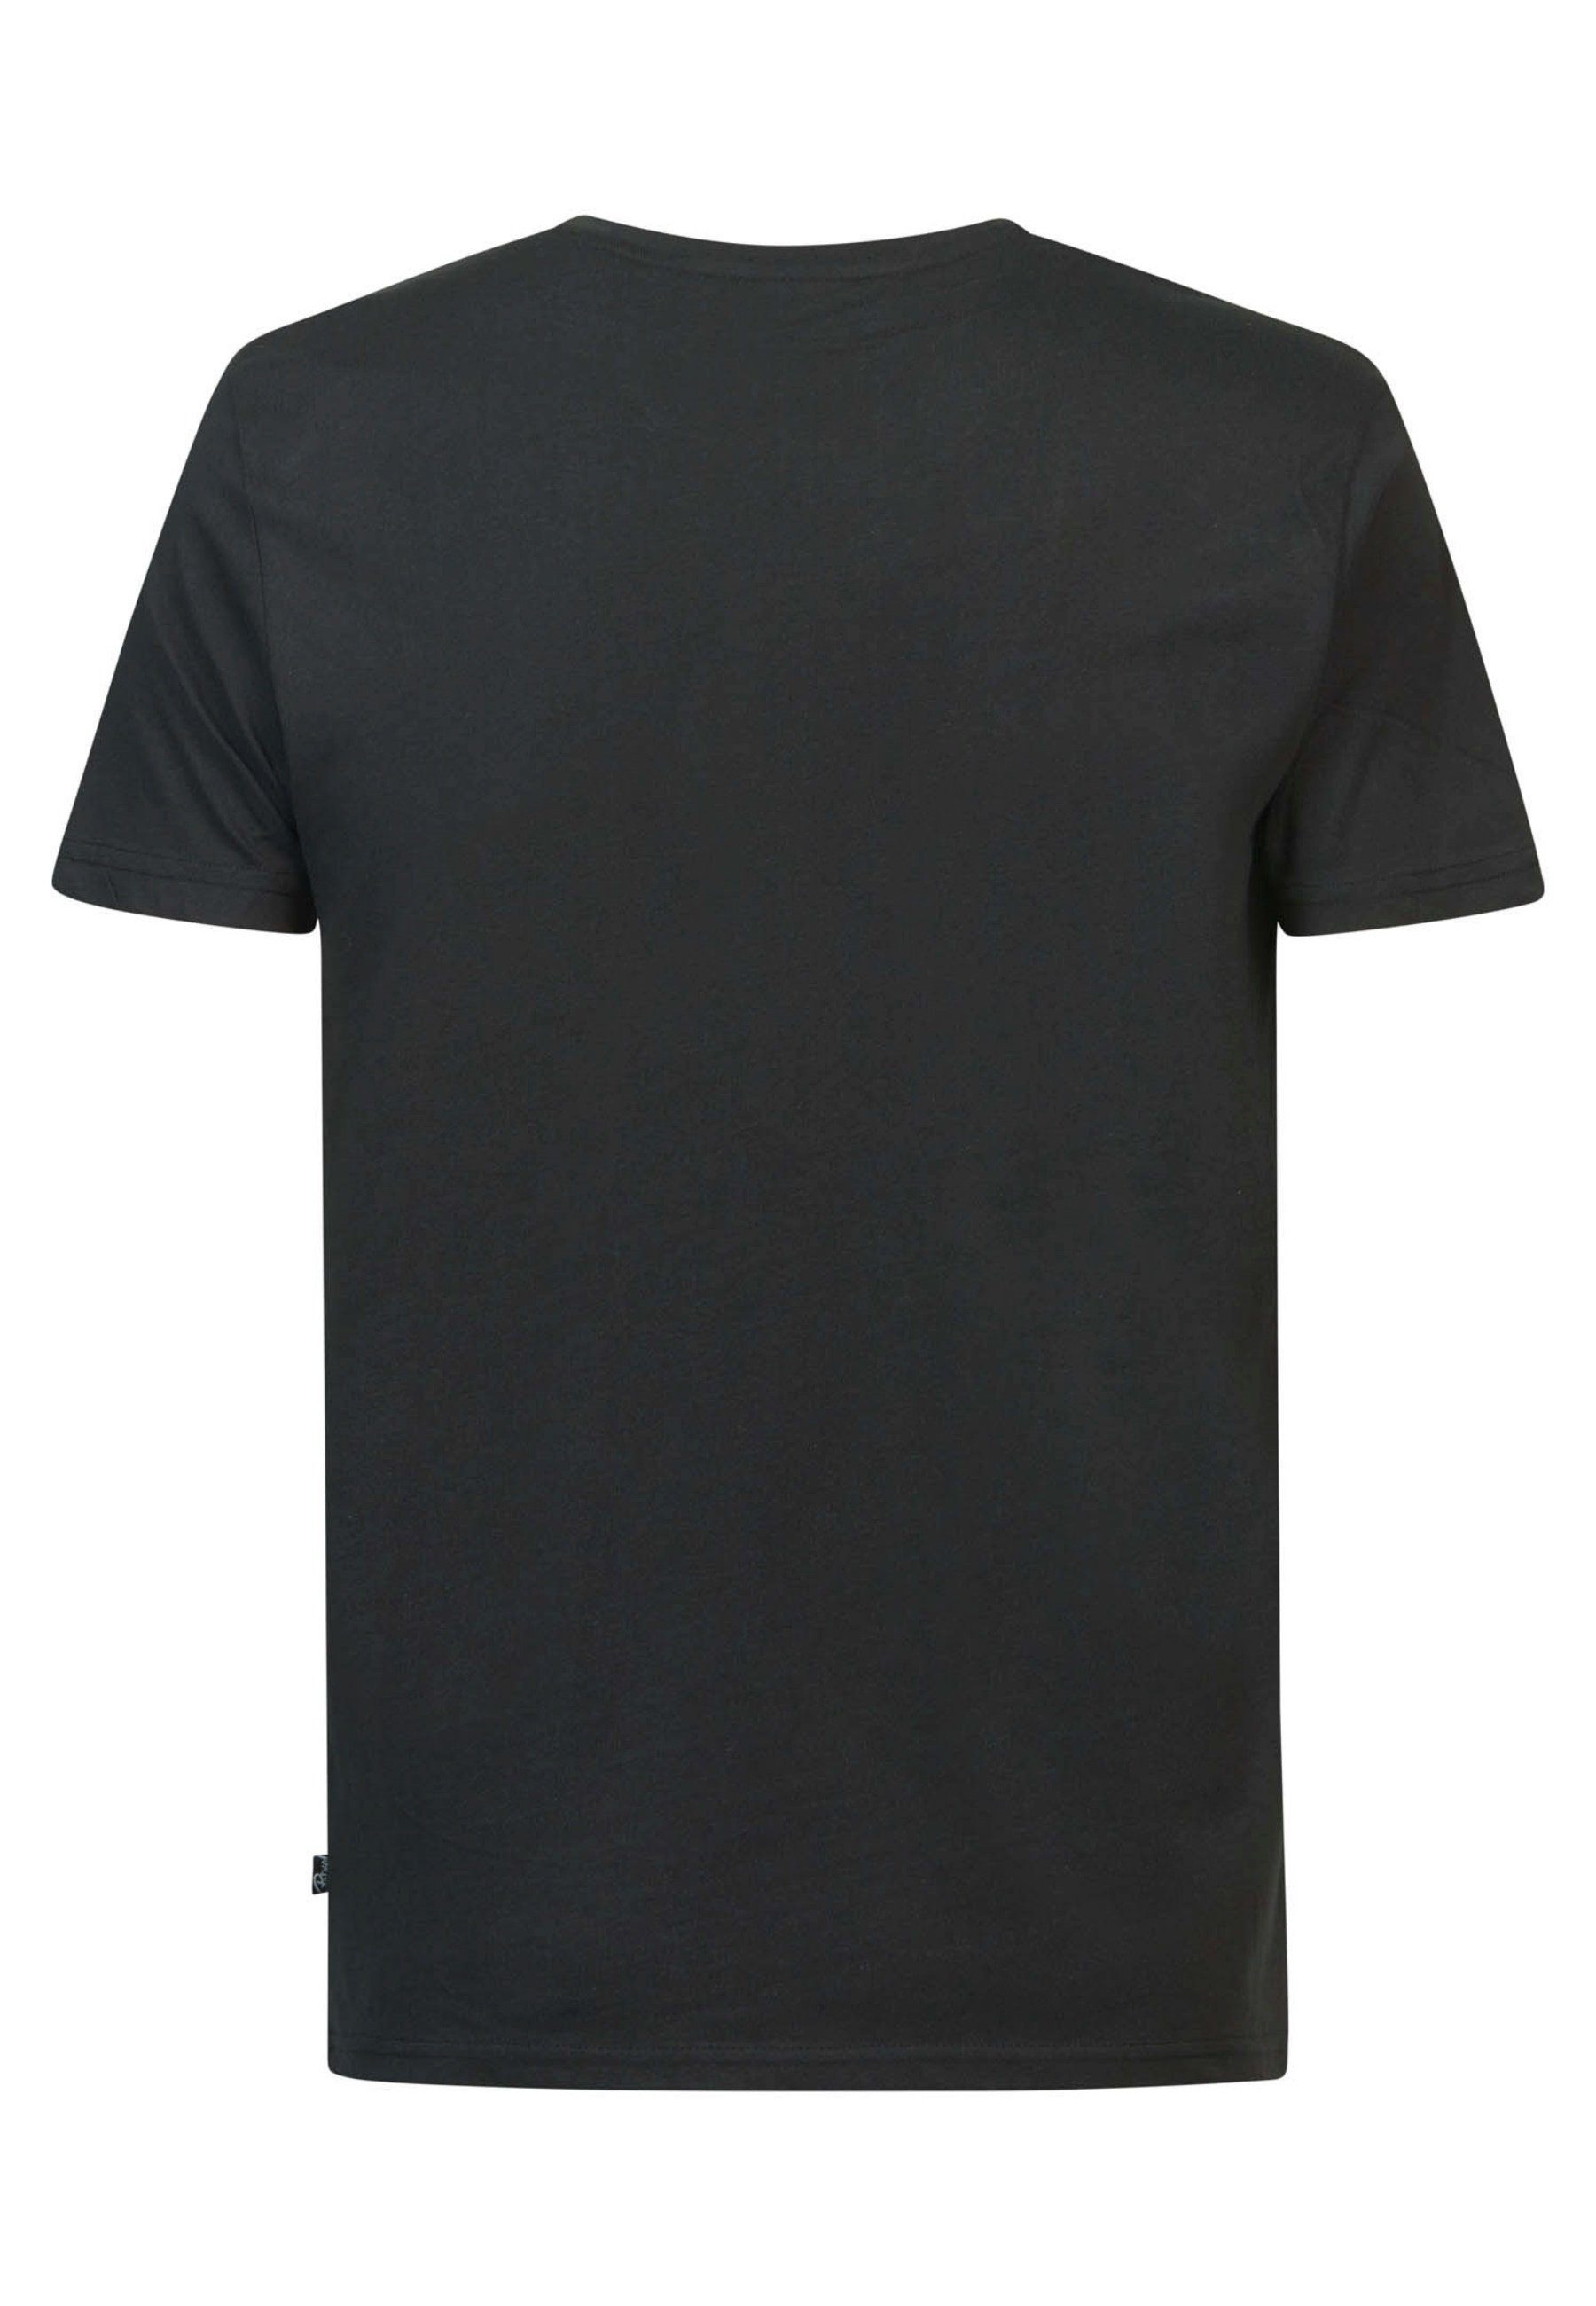 Kurzarmshirt Industries T-Shirt Petrol schwarz T-Shirt